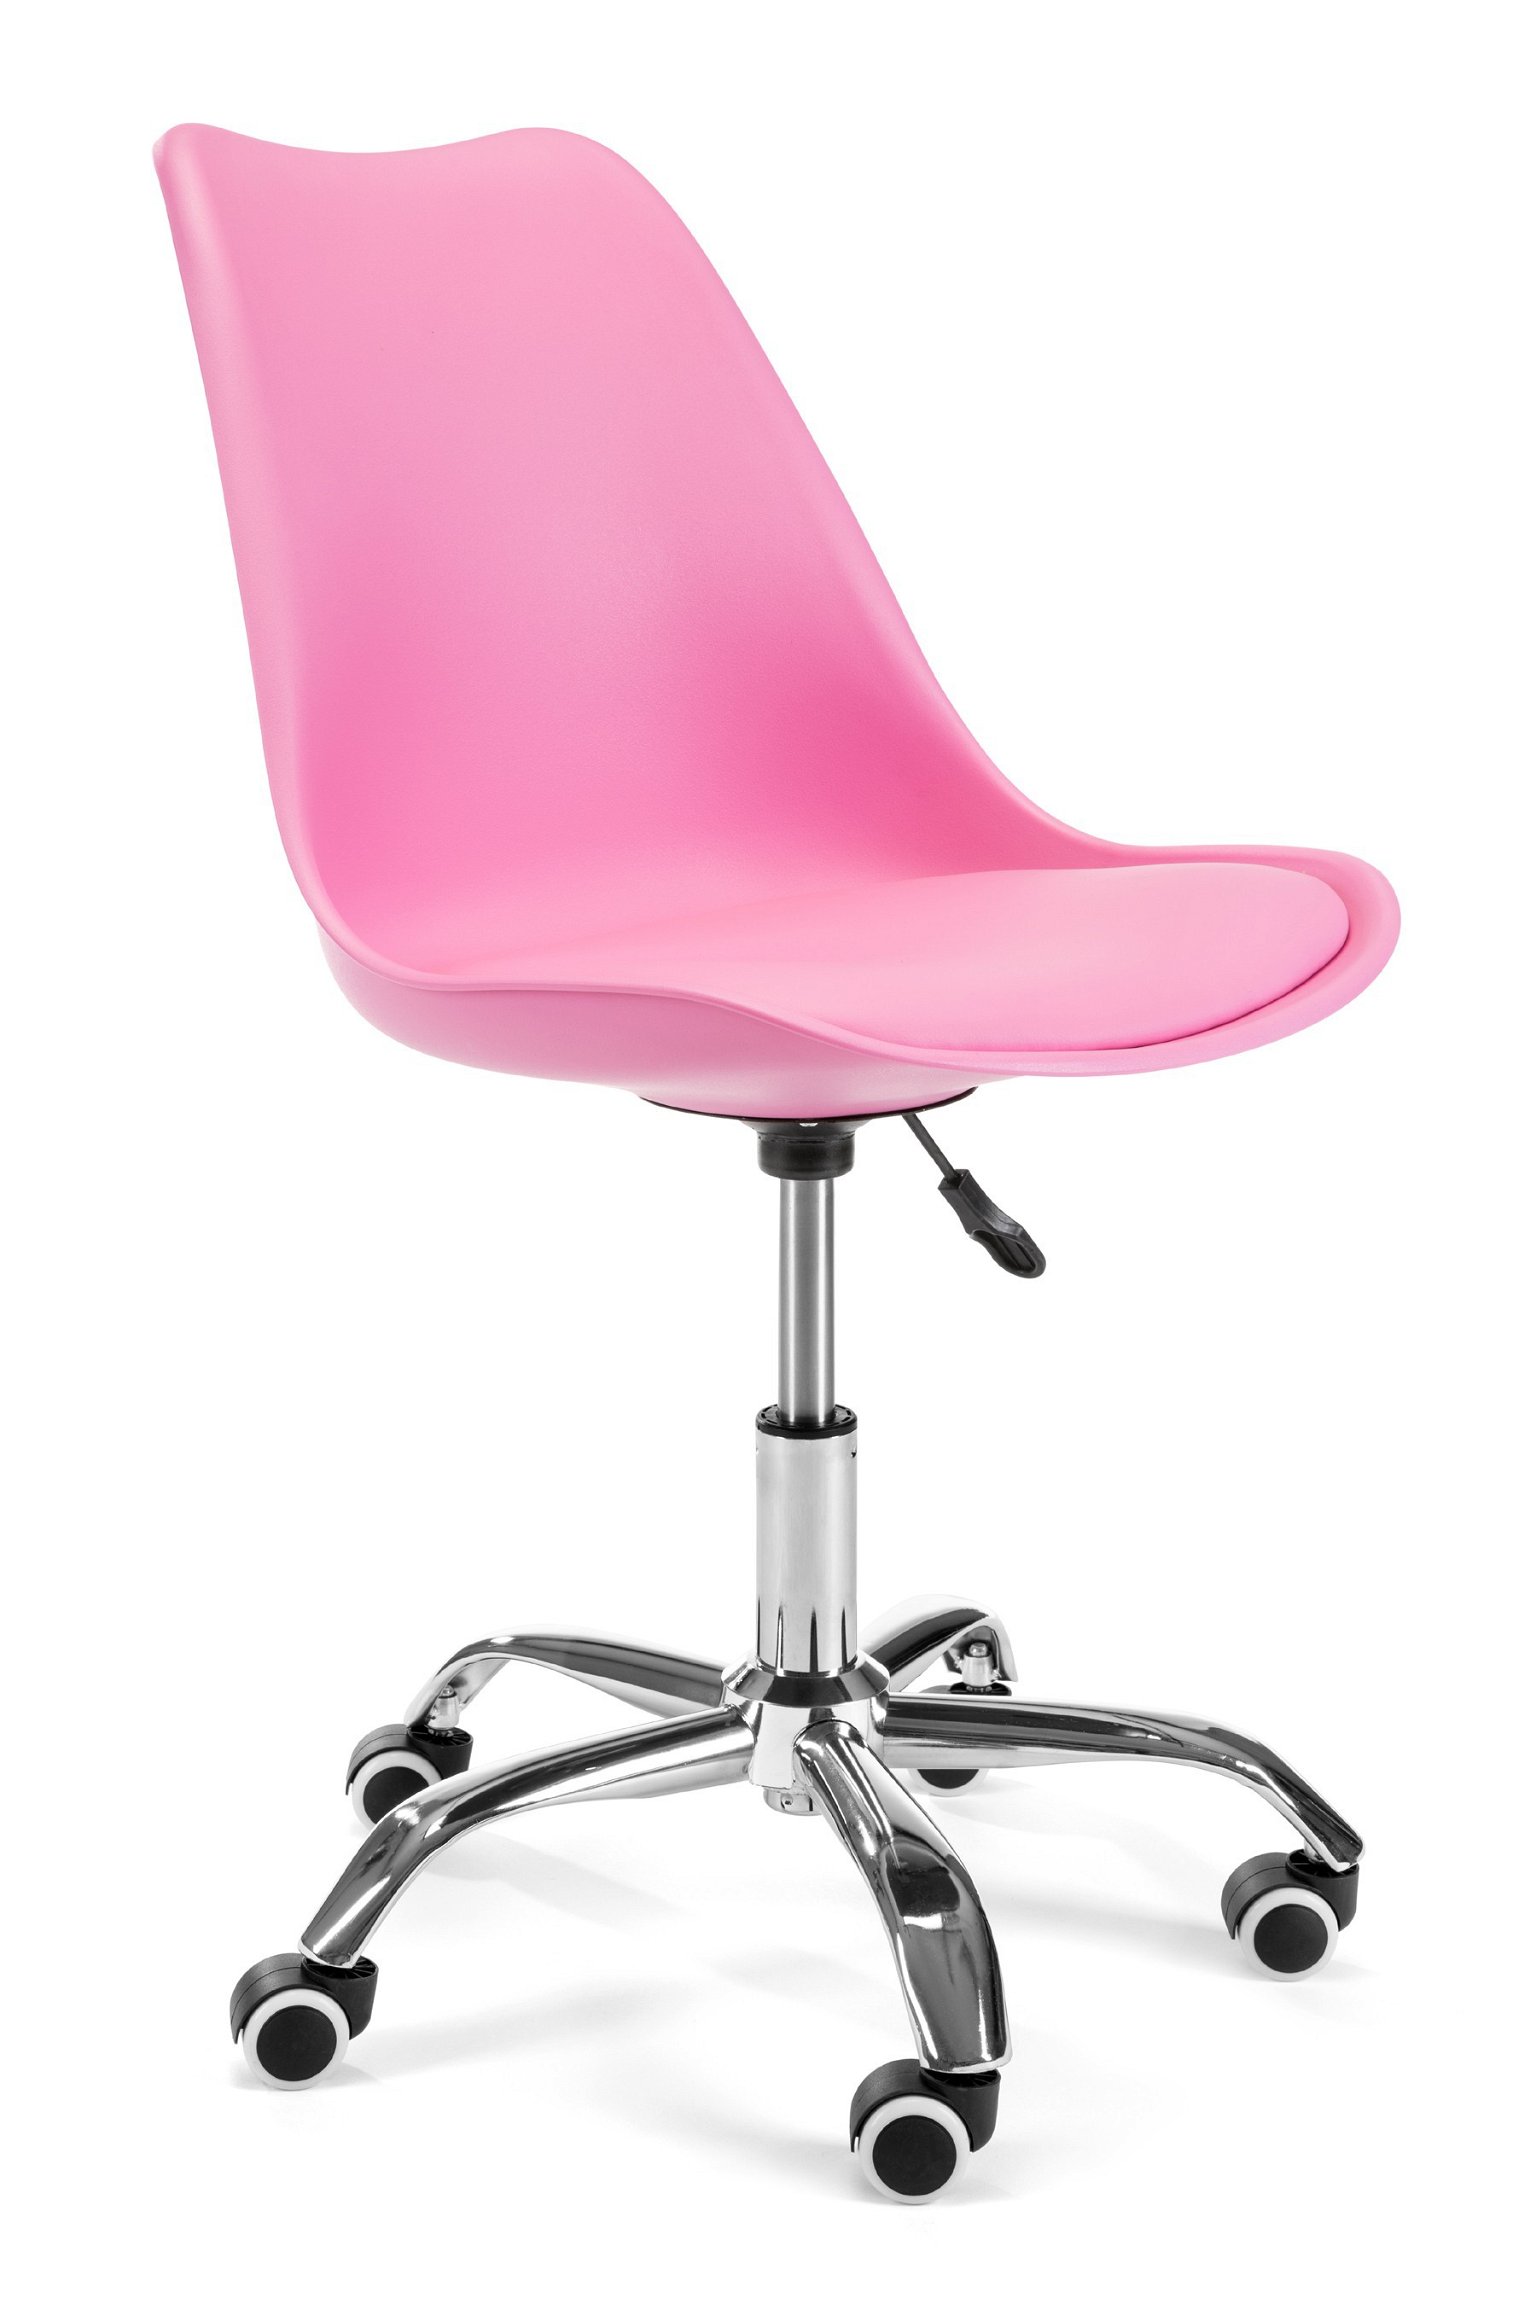 Vaikiška kėdė FD005, rožinė